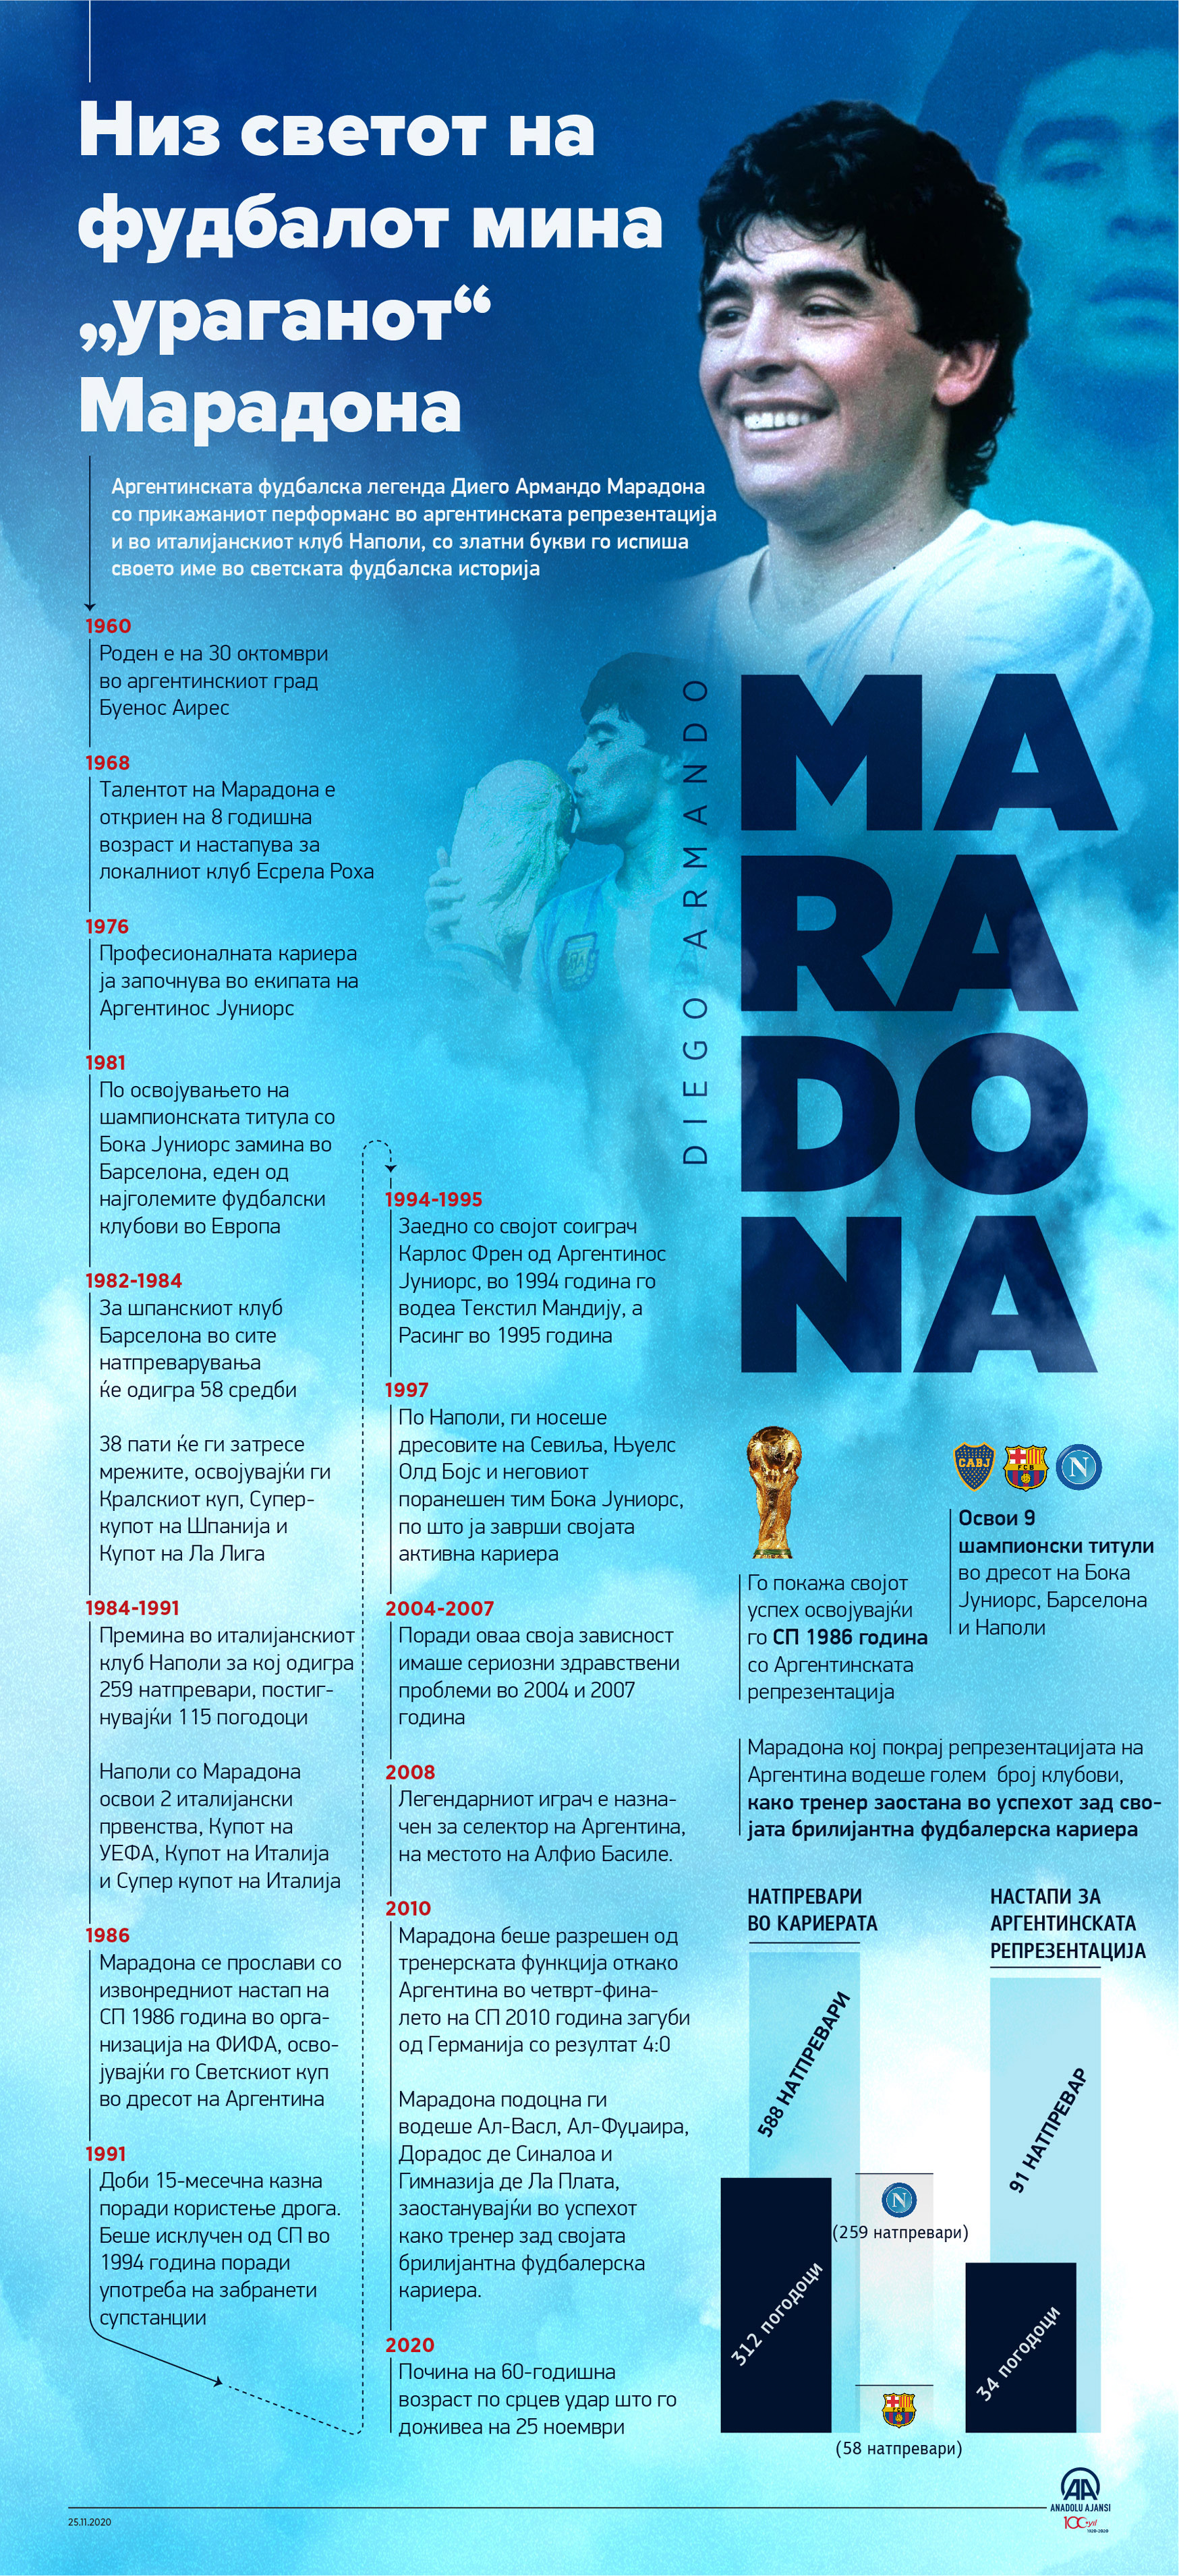 Низ светот на фудбалот мина „ураганот“ Марадона